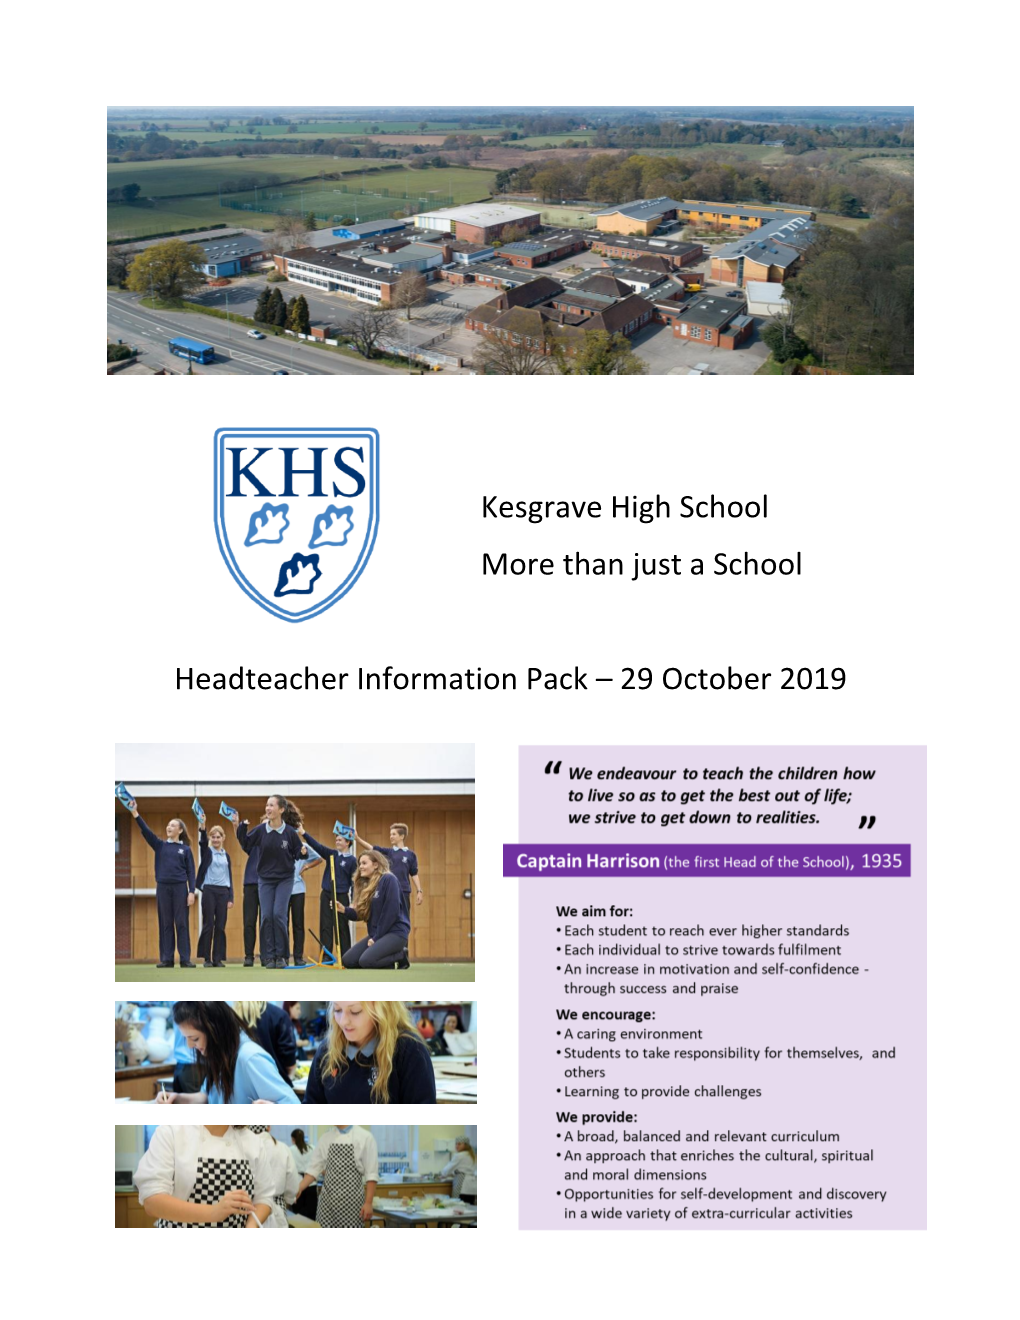 Kesgrave High School More Than Just a School Headteacher Information Pack – 29 October 2019